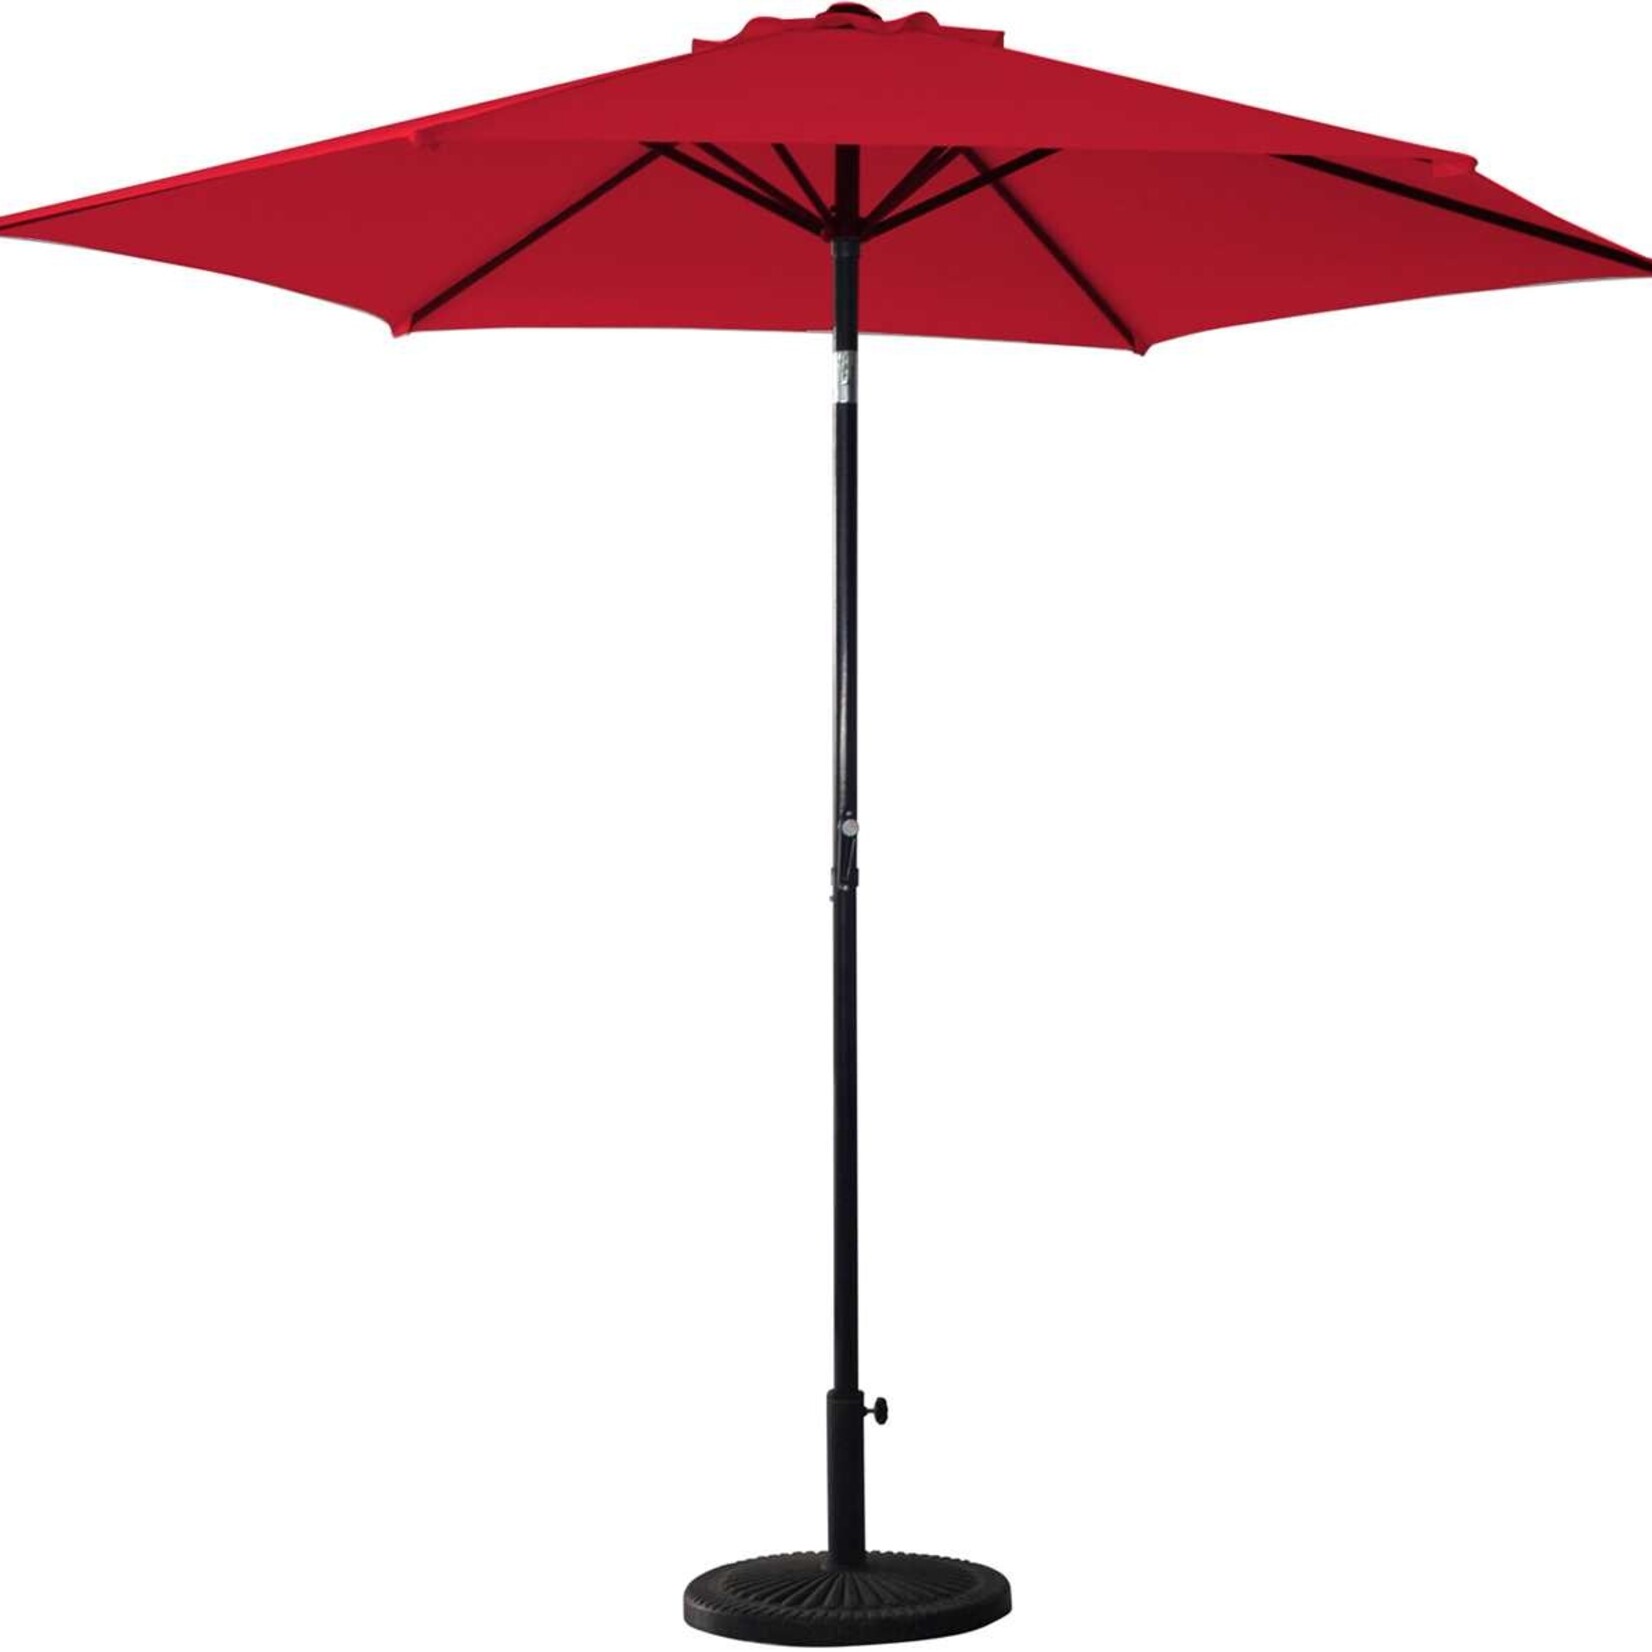 9' Aluminum Umbrella With Crank/Tilt - Poppy (Red)